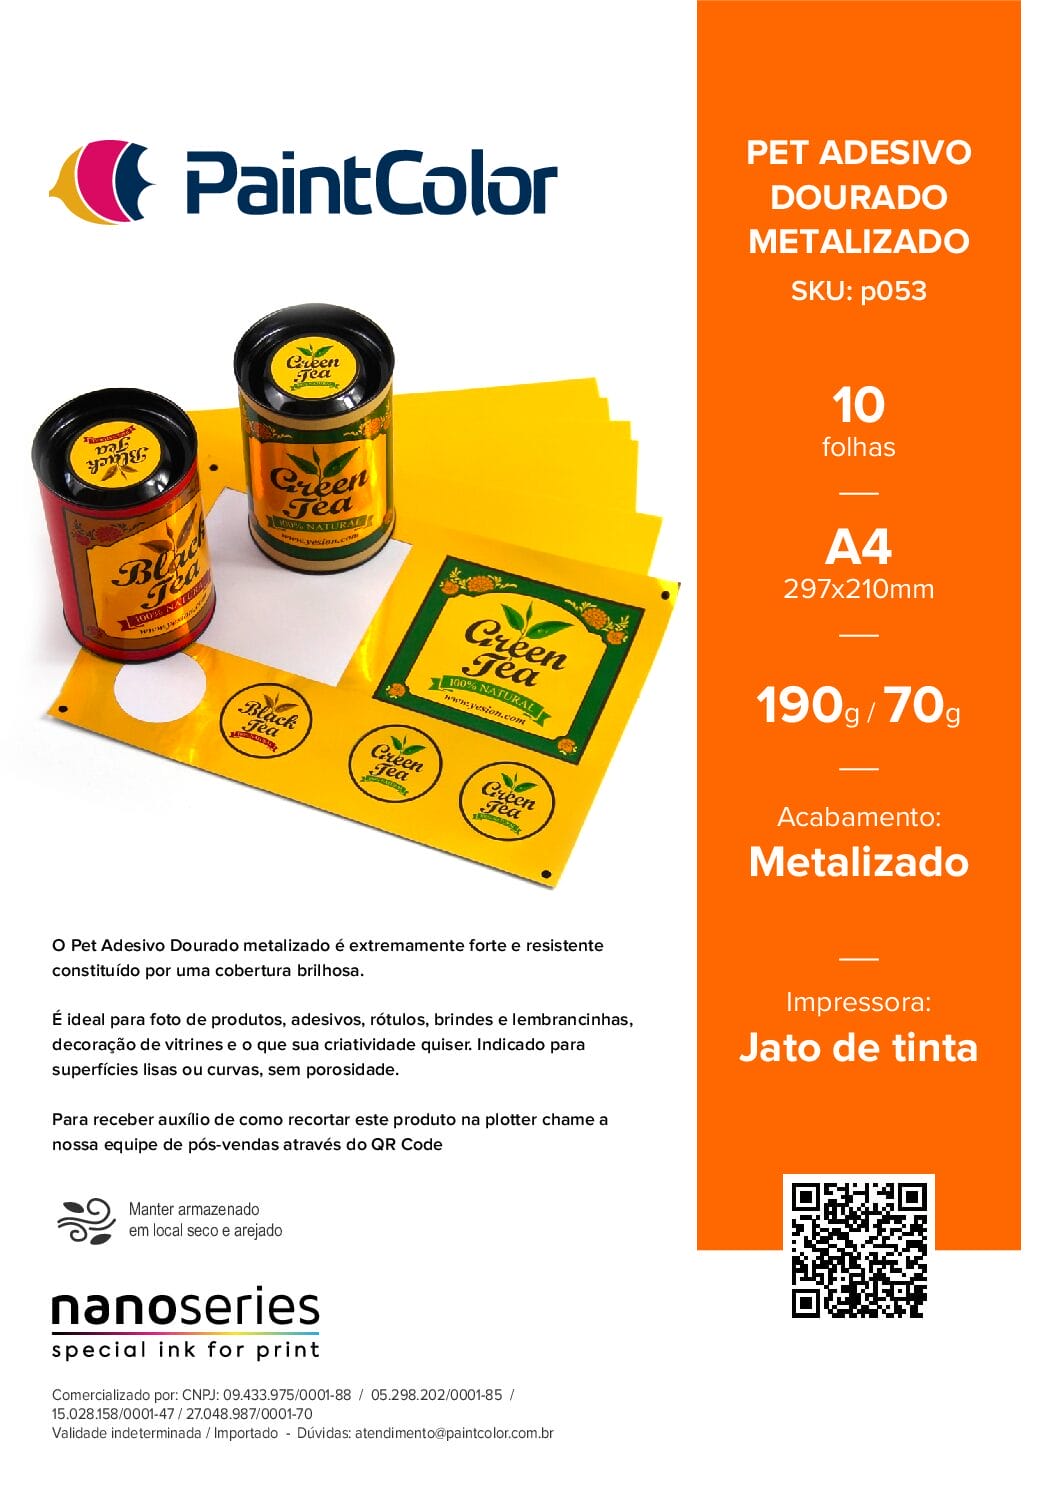 Vinil PET Adesivo Dourado Metalizado Prova Dagua A4 - 10 Folhas